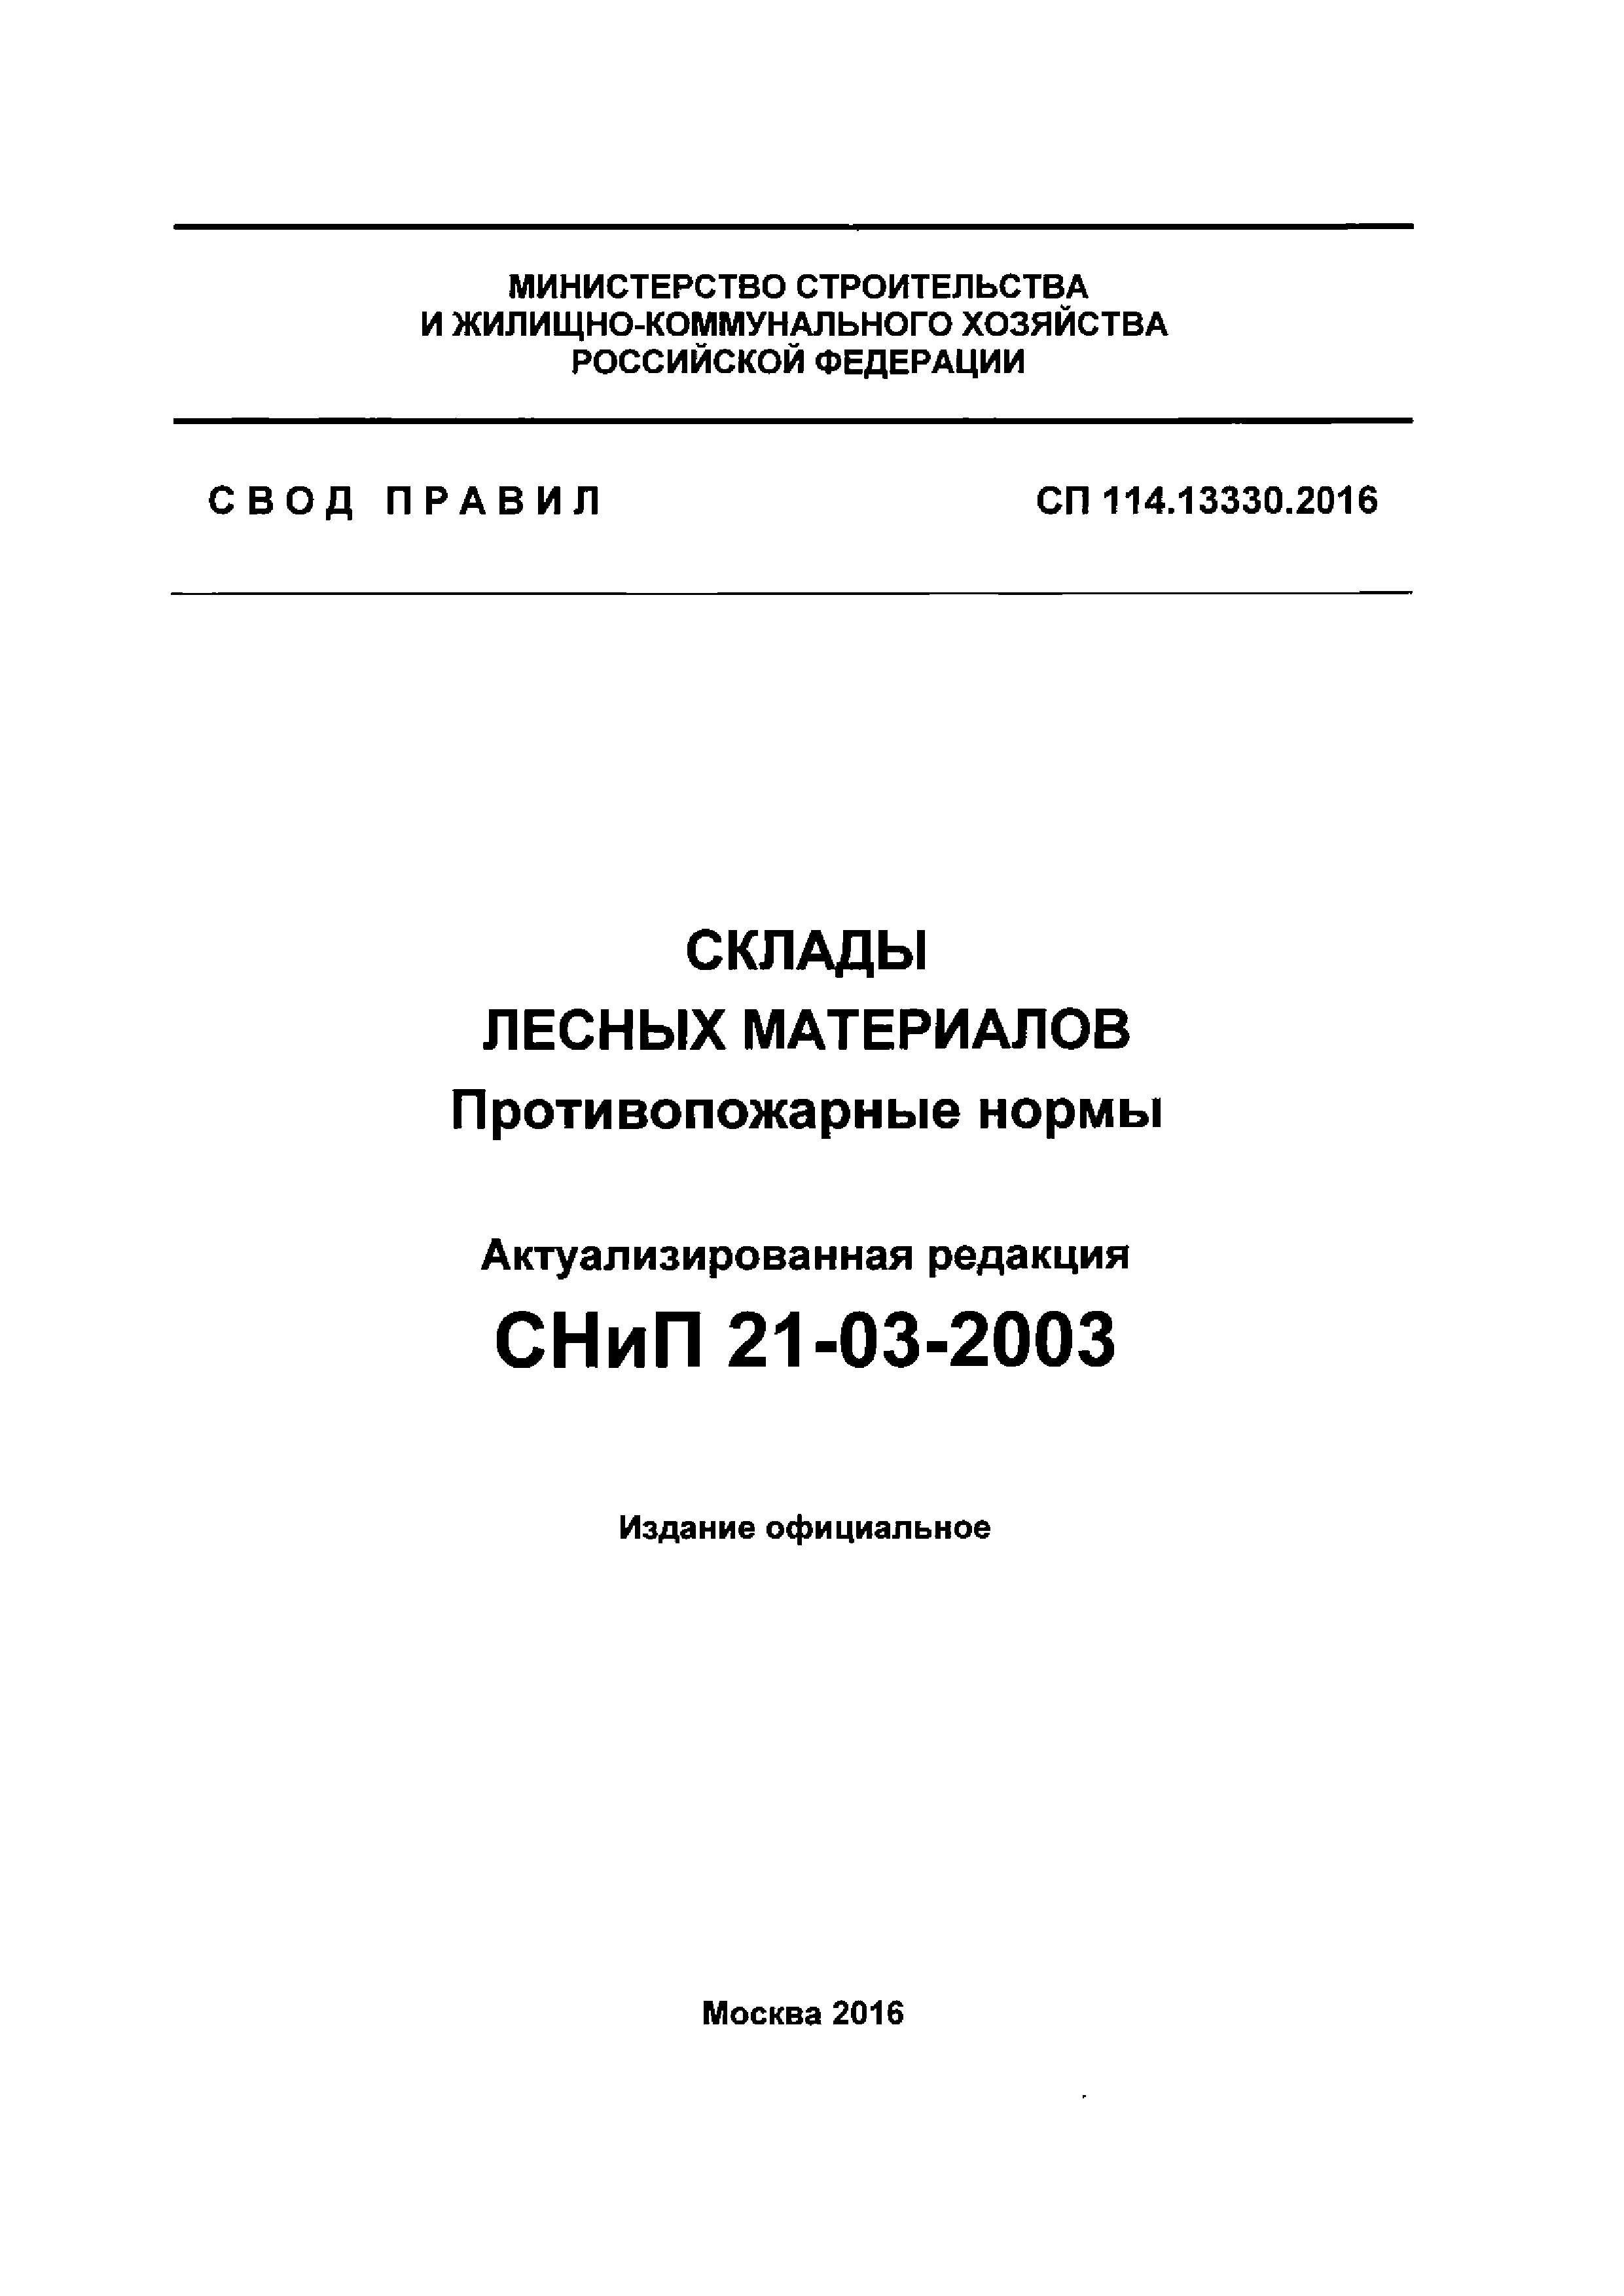 СП 114.13330.2016